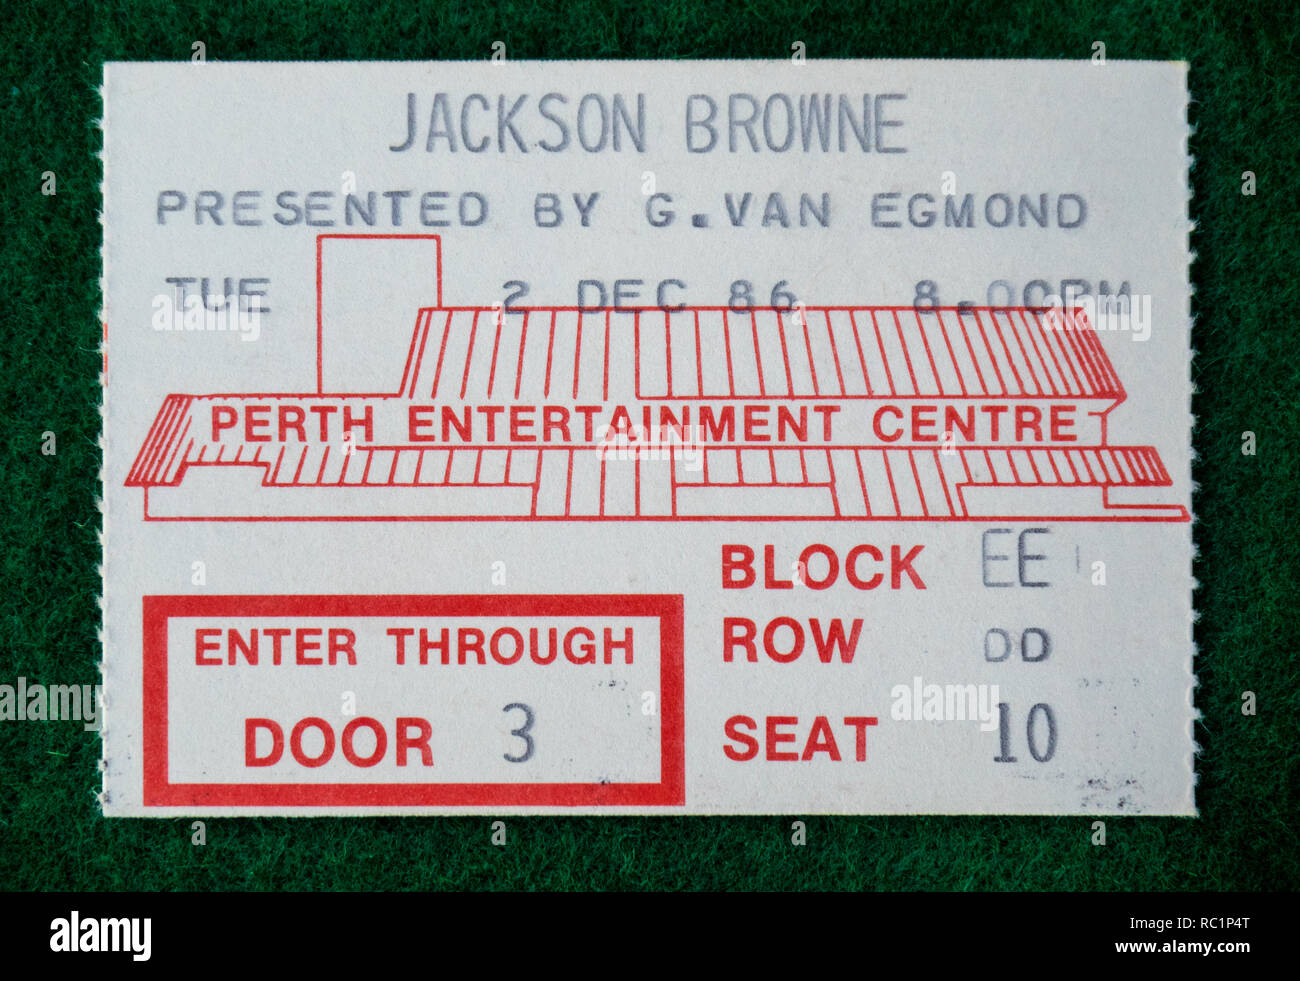 Ticket für Jackson Browne Konzert in Perth Entertainment Center 1986, WA Australien. Stockfoto